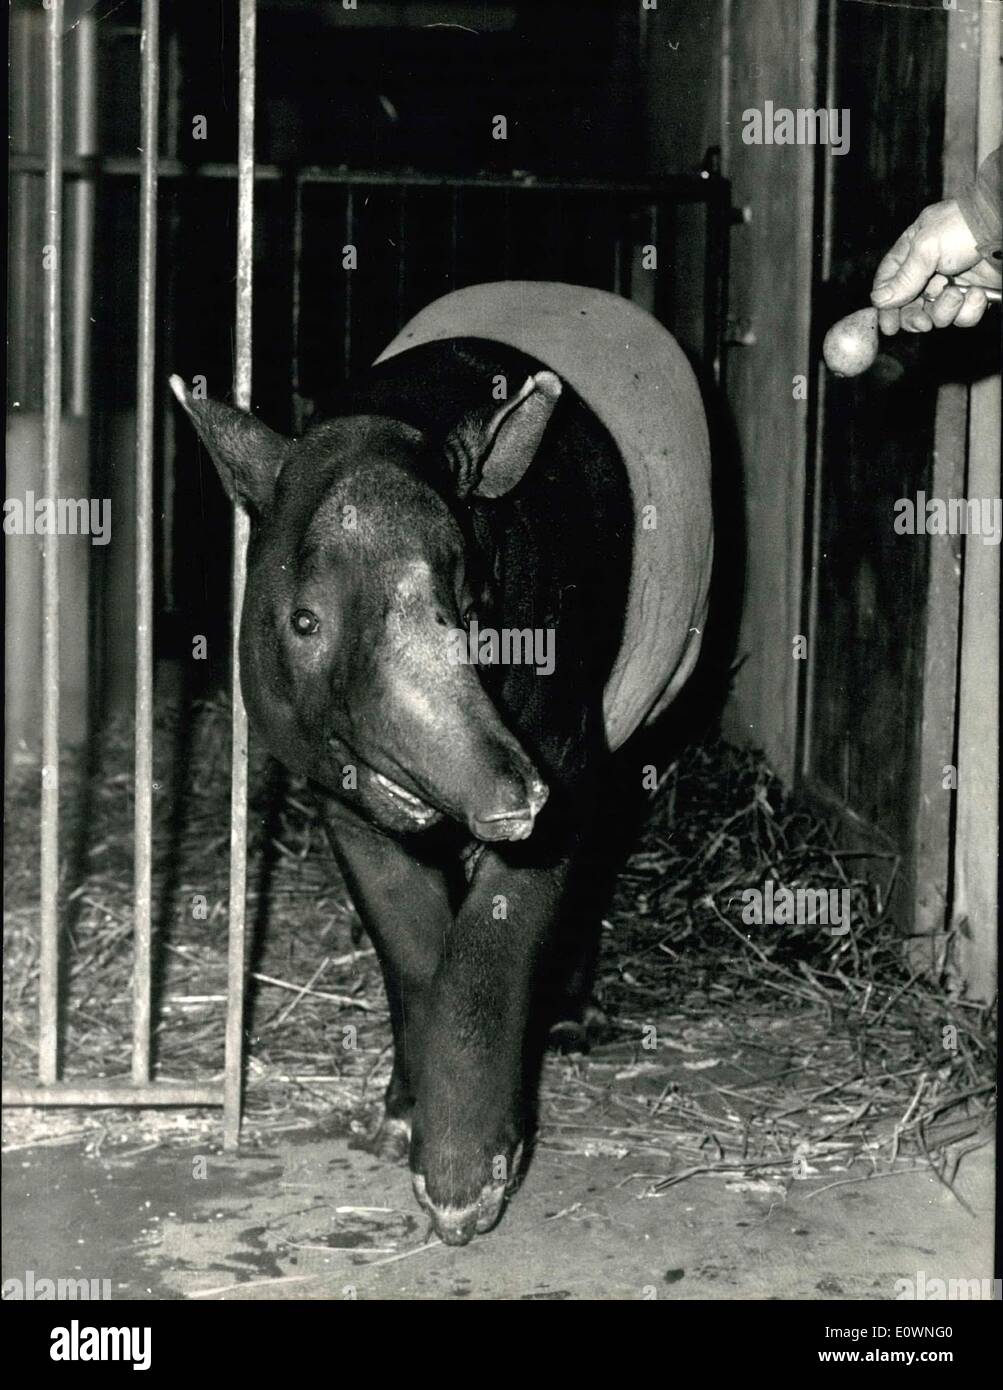 Dic. 18, 1963 - Un indiano il tapiro a Vincennes Zoo: Il Tapiro indiano è un animale che appartiene a una rara specy. Il Vincesnnes Zoo, nei pressi di Parigi, ha appena introdotto un esemplare di questa razza. Mostra immagine: Te giovani indiani tapiro in Vincennes Zoo. Foto Stock